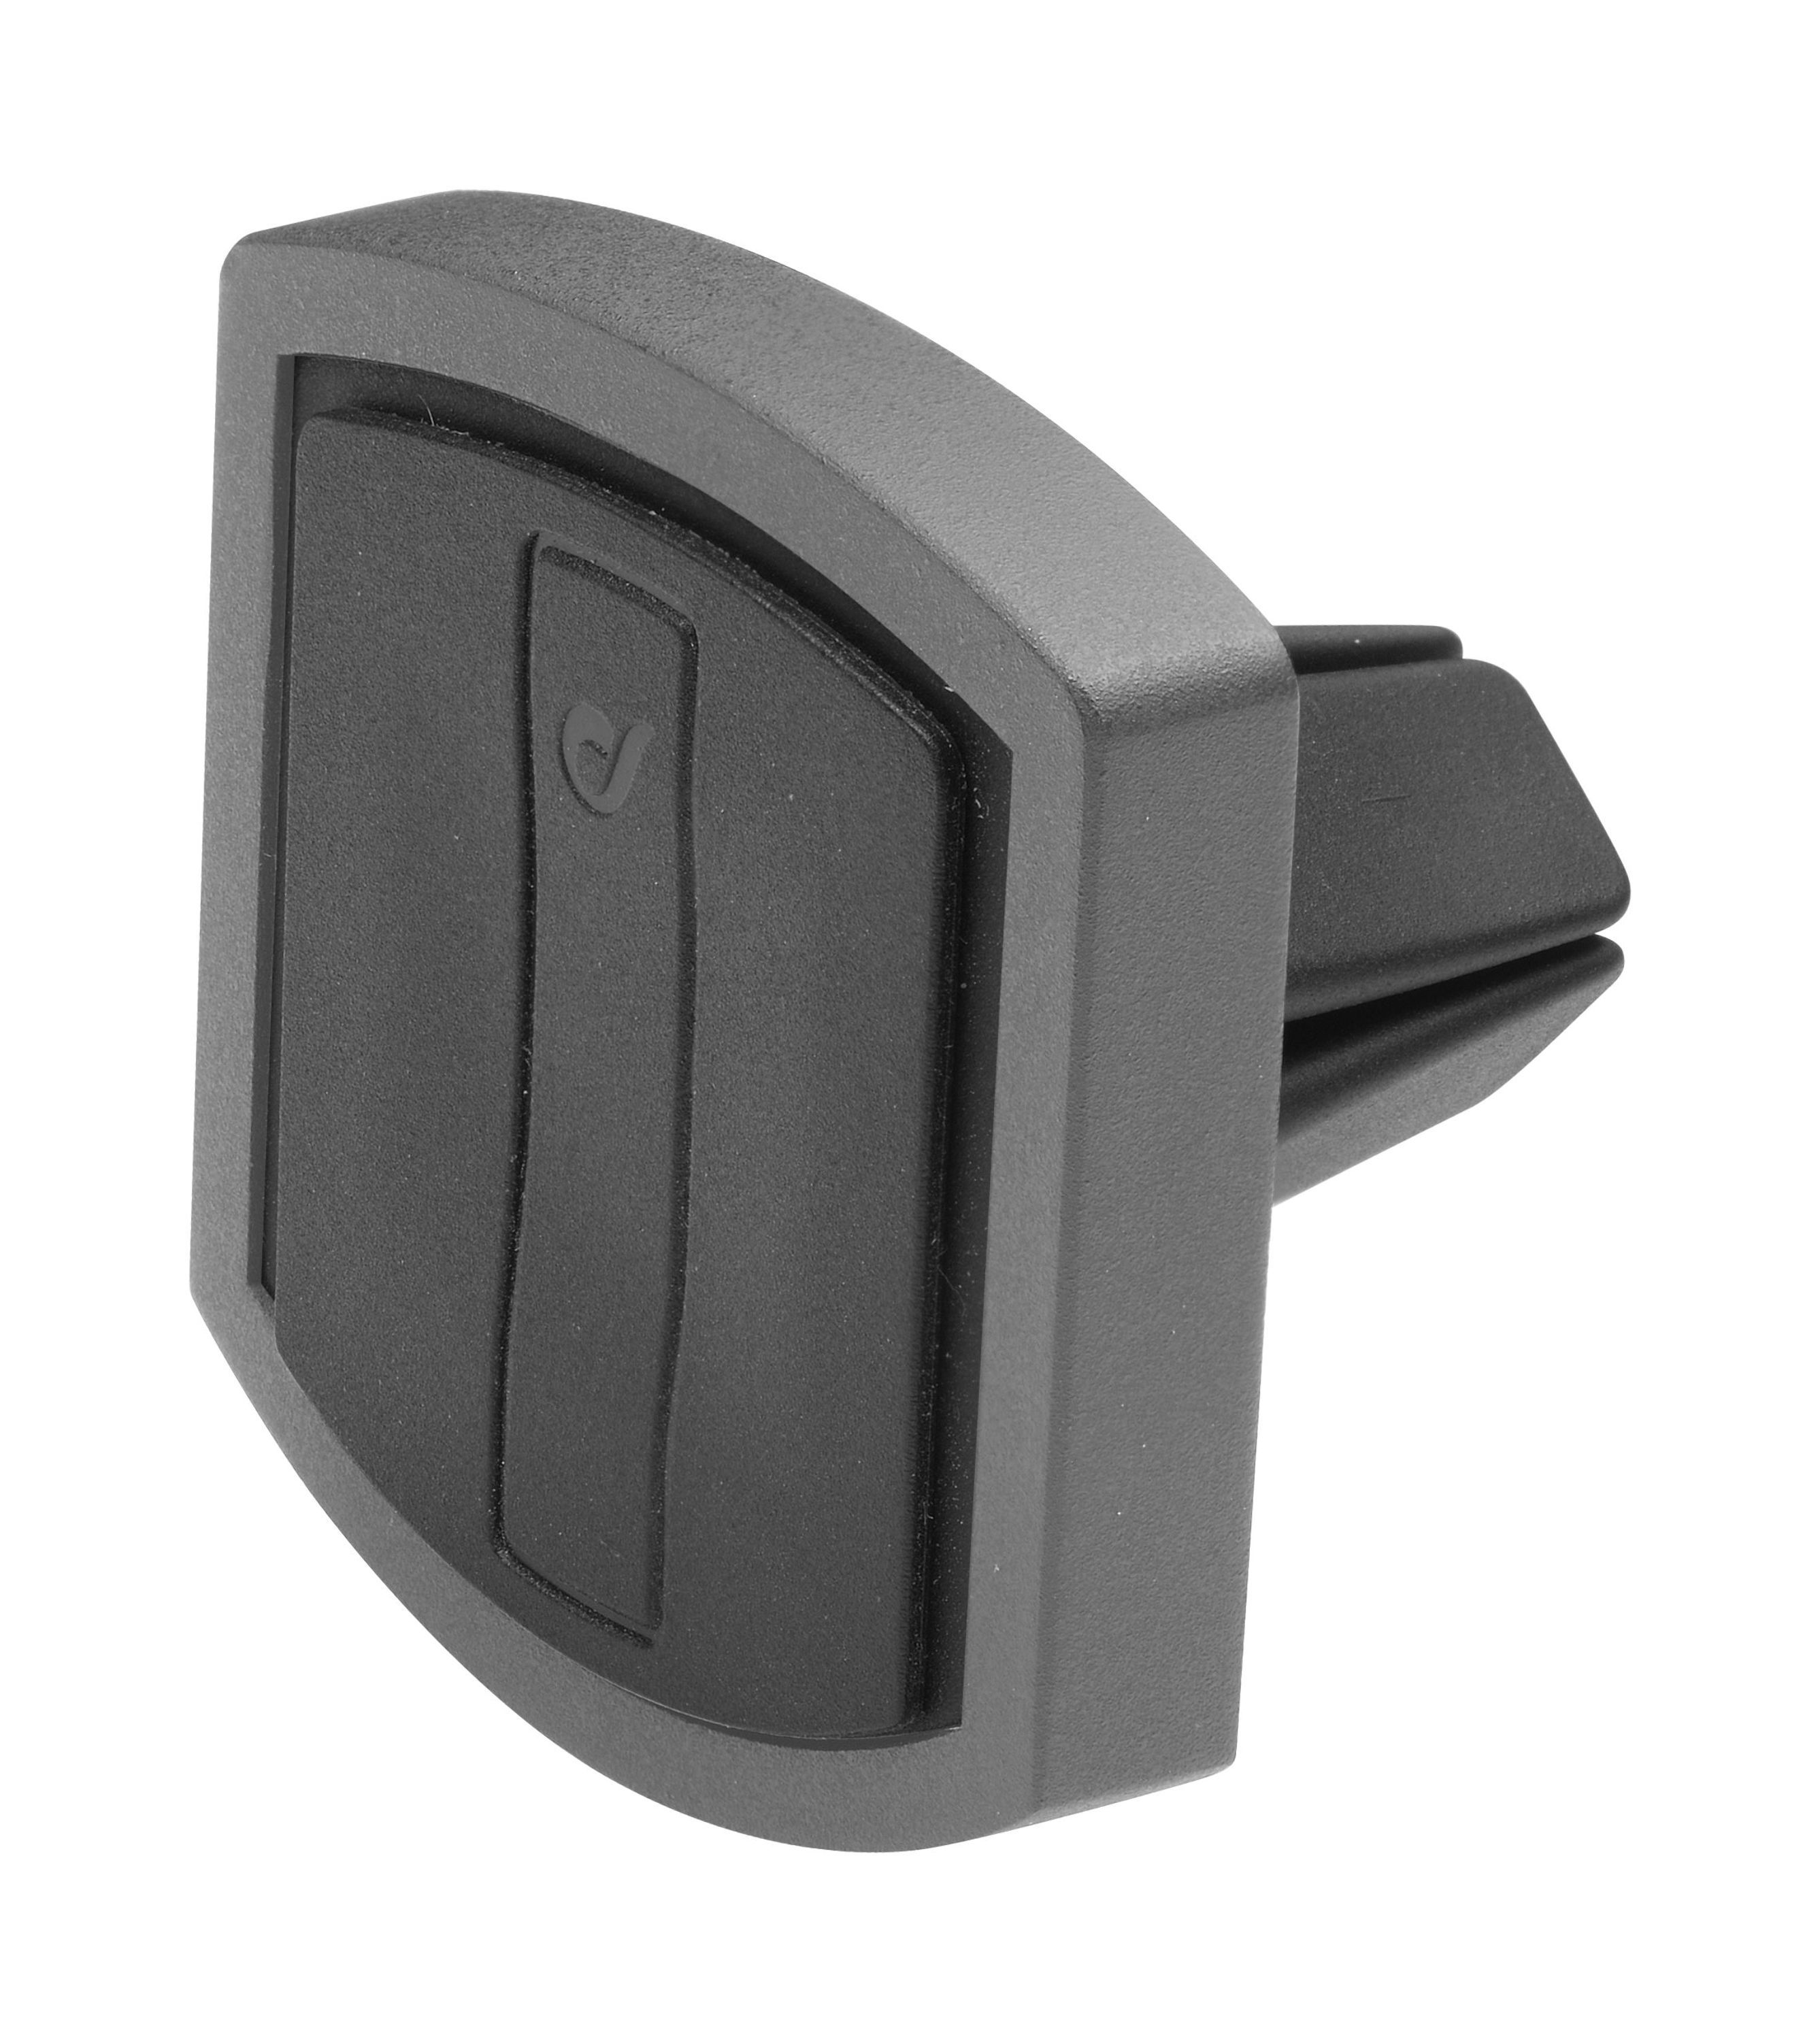 Magnetický držák do ventilace Cellularline Mag4 Handy Force Drive, My Car Edition, černý